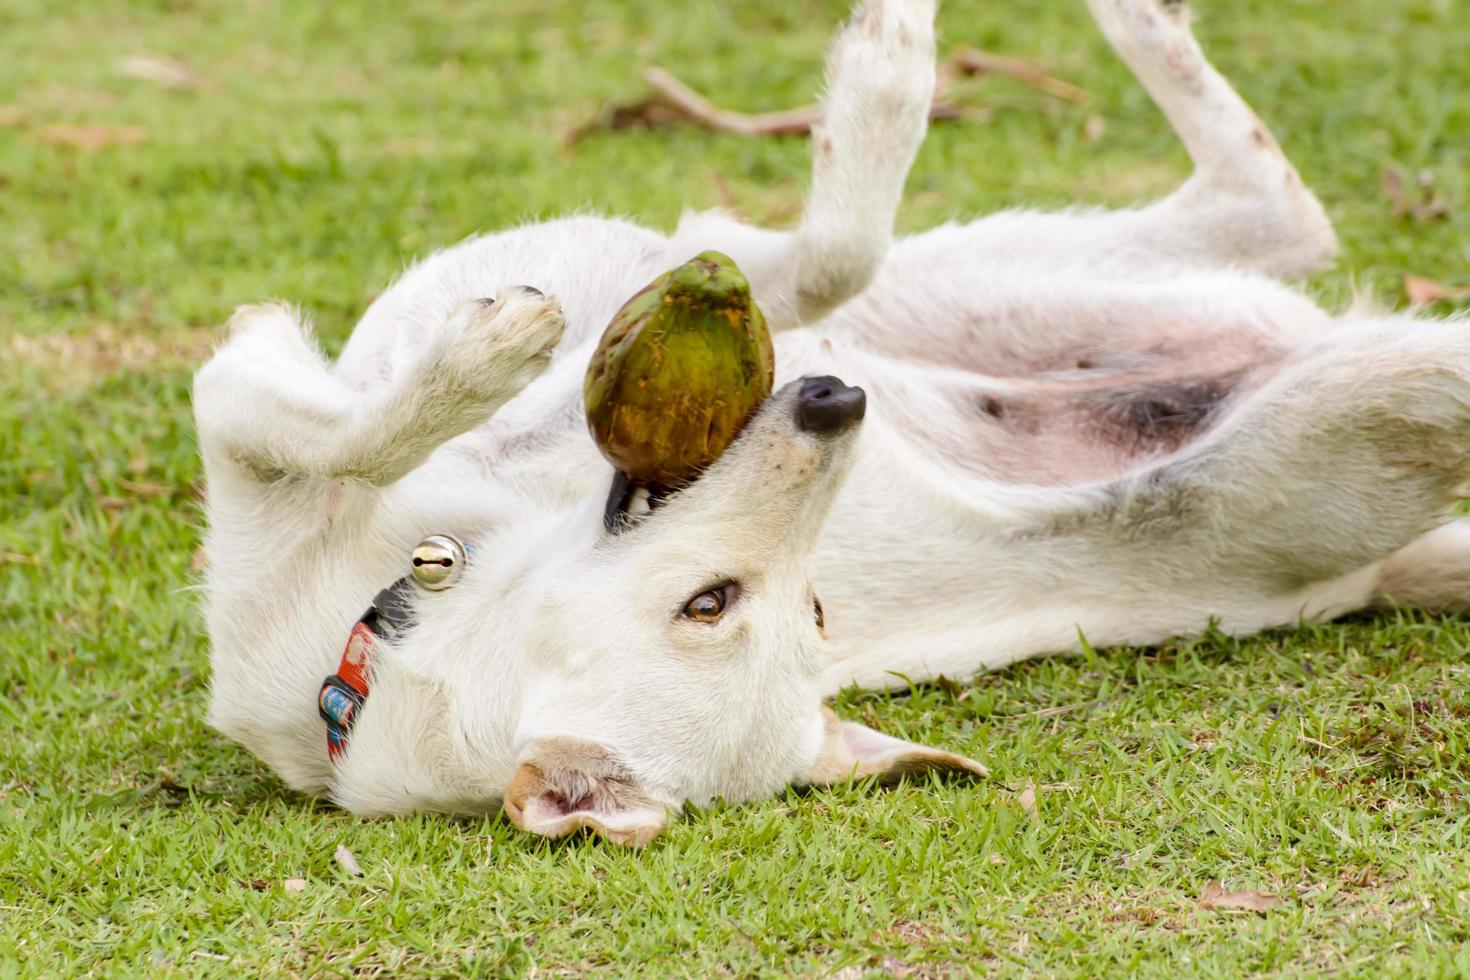 Der Hund spielt mit der Kokosnuss, dass es Spaß macht. foto